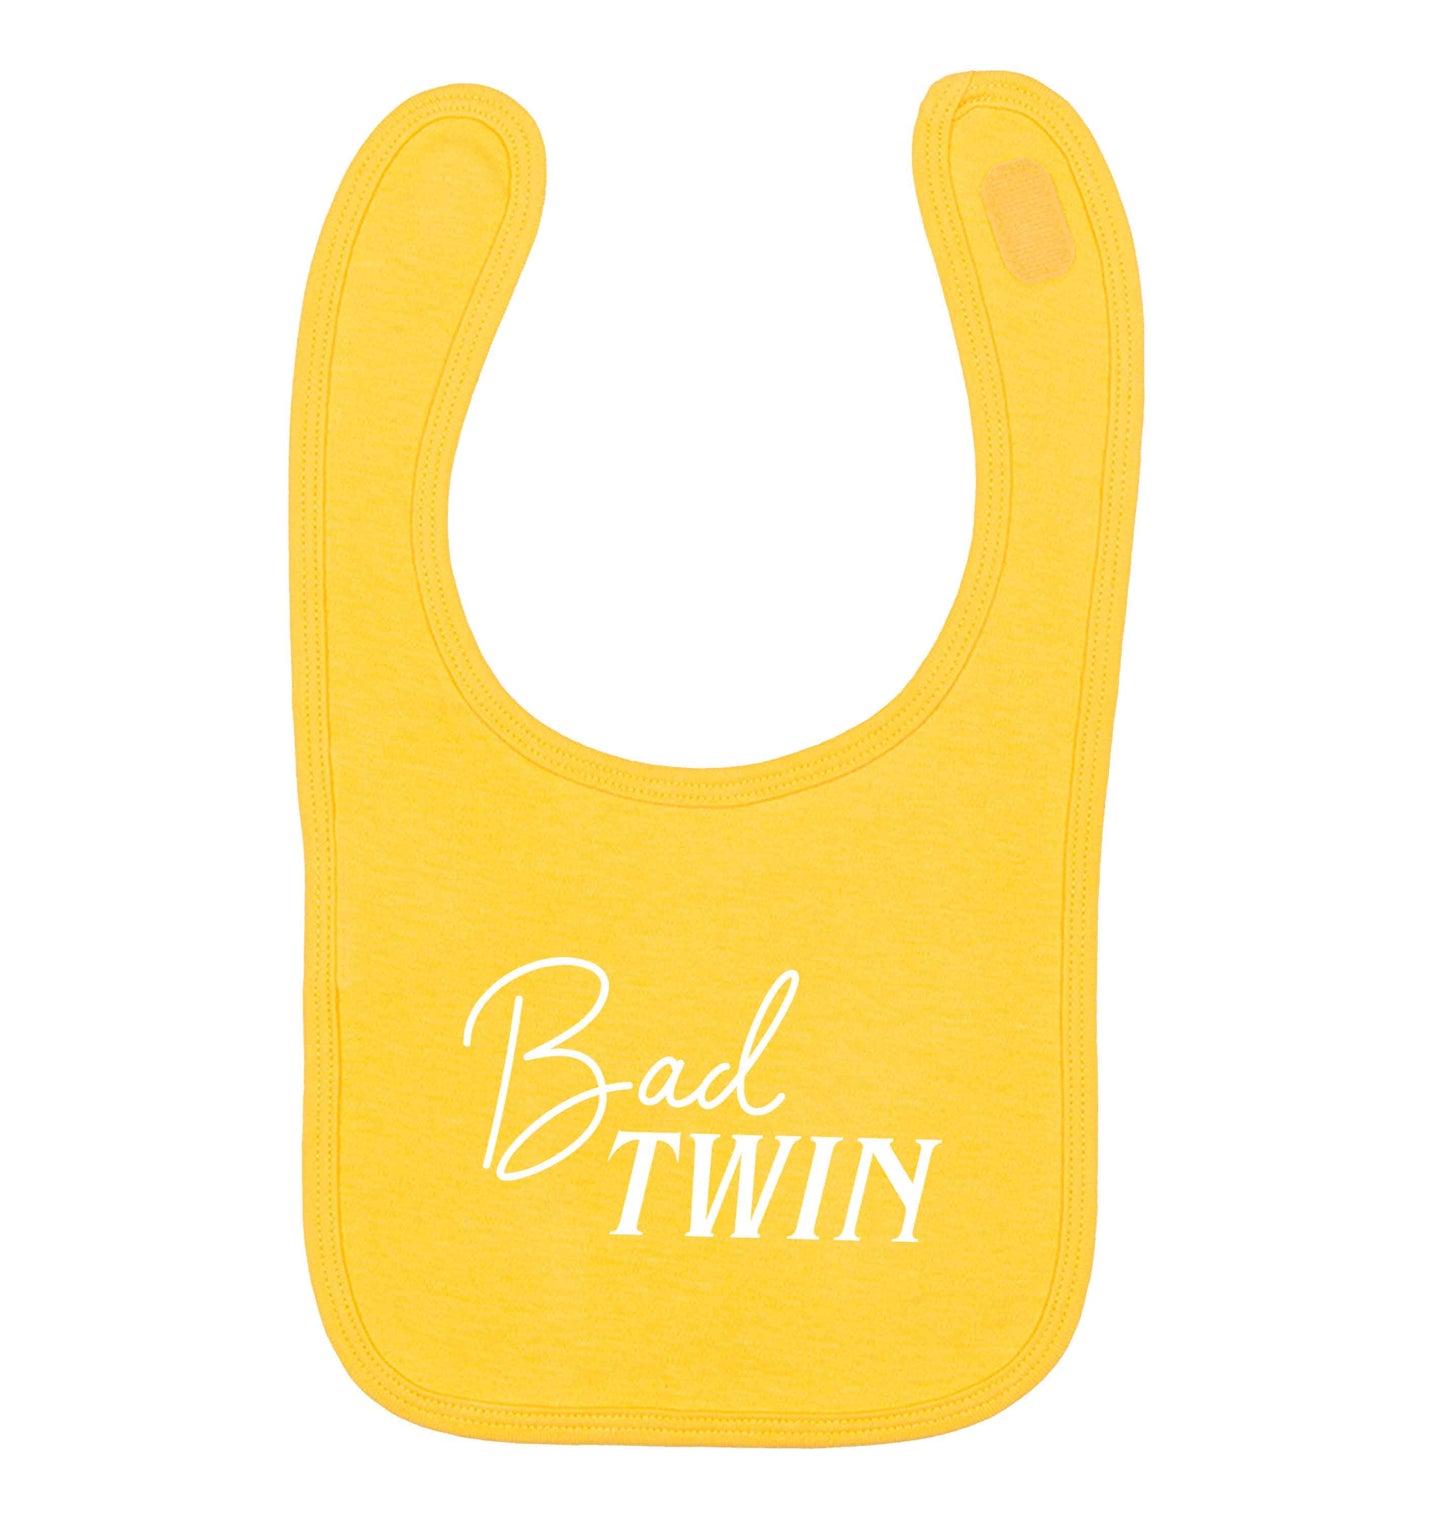 Bad twin yellow baby bib